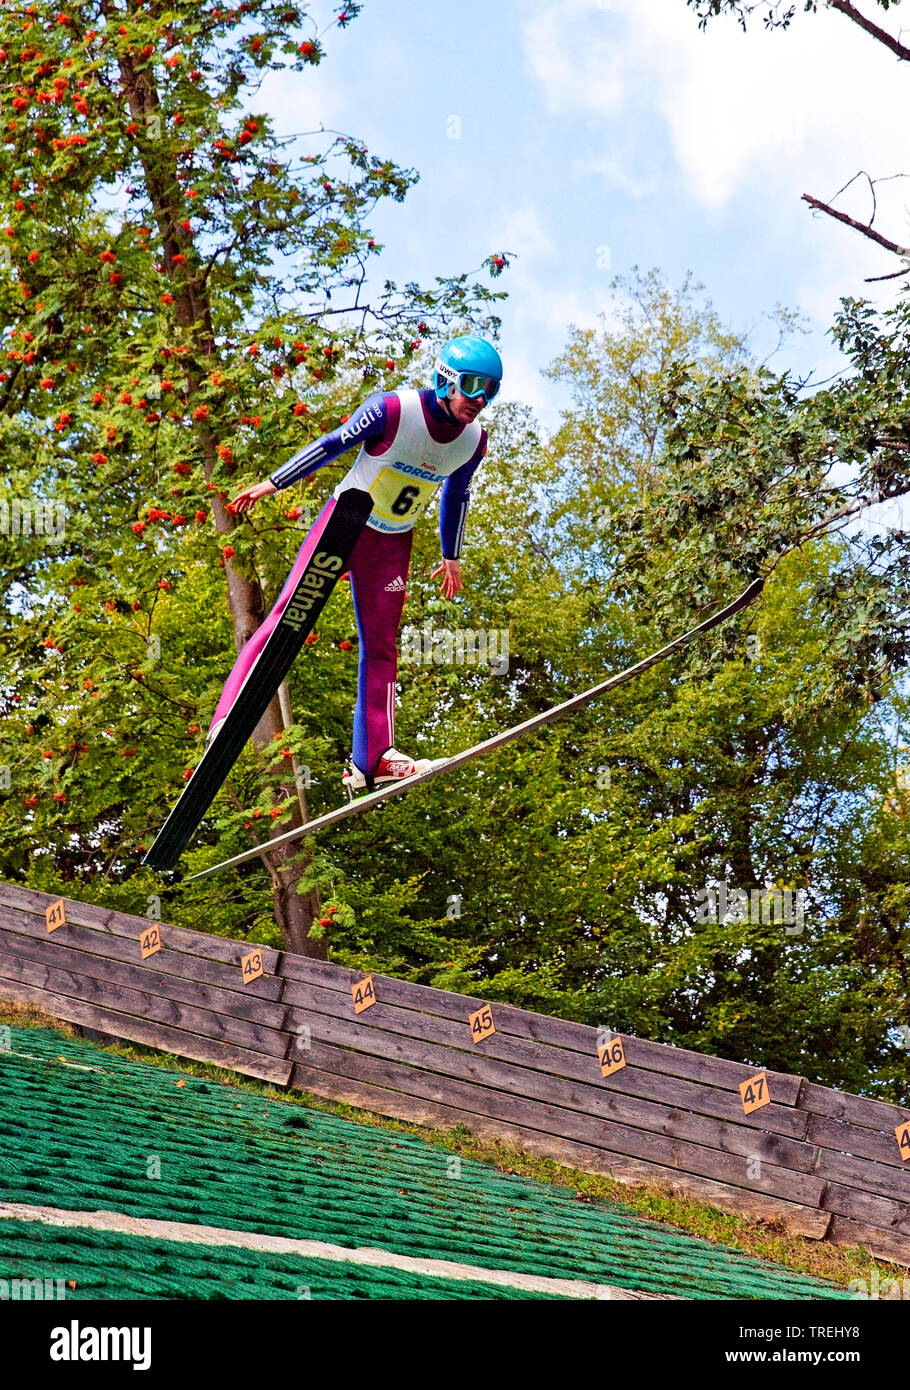 ski jumper in flight, Meinhardus ski jumping hill in summer, Germany, North Rhine-Westphalia, Sauerland, Meinerzhagen Stock Photo